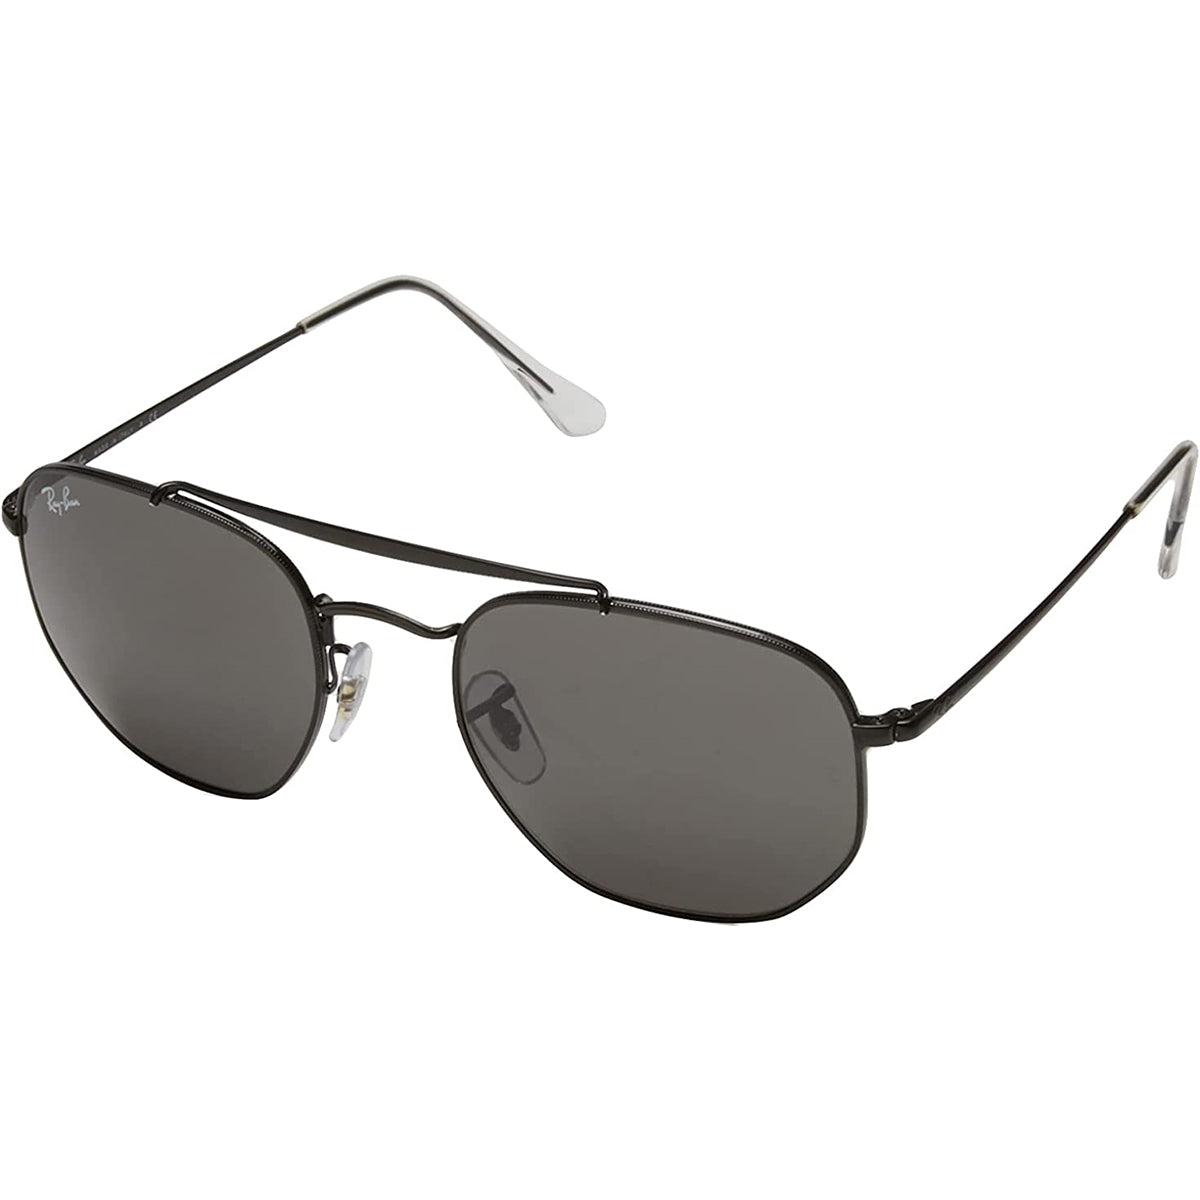 Ray-Ban Marshal Adult Aviator Sunglasses-0RB3648